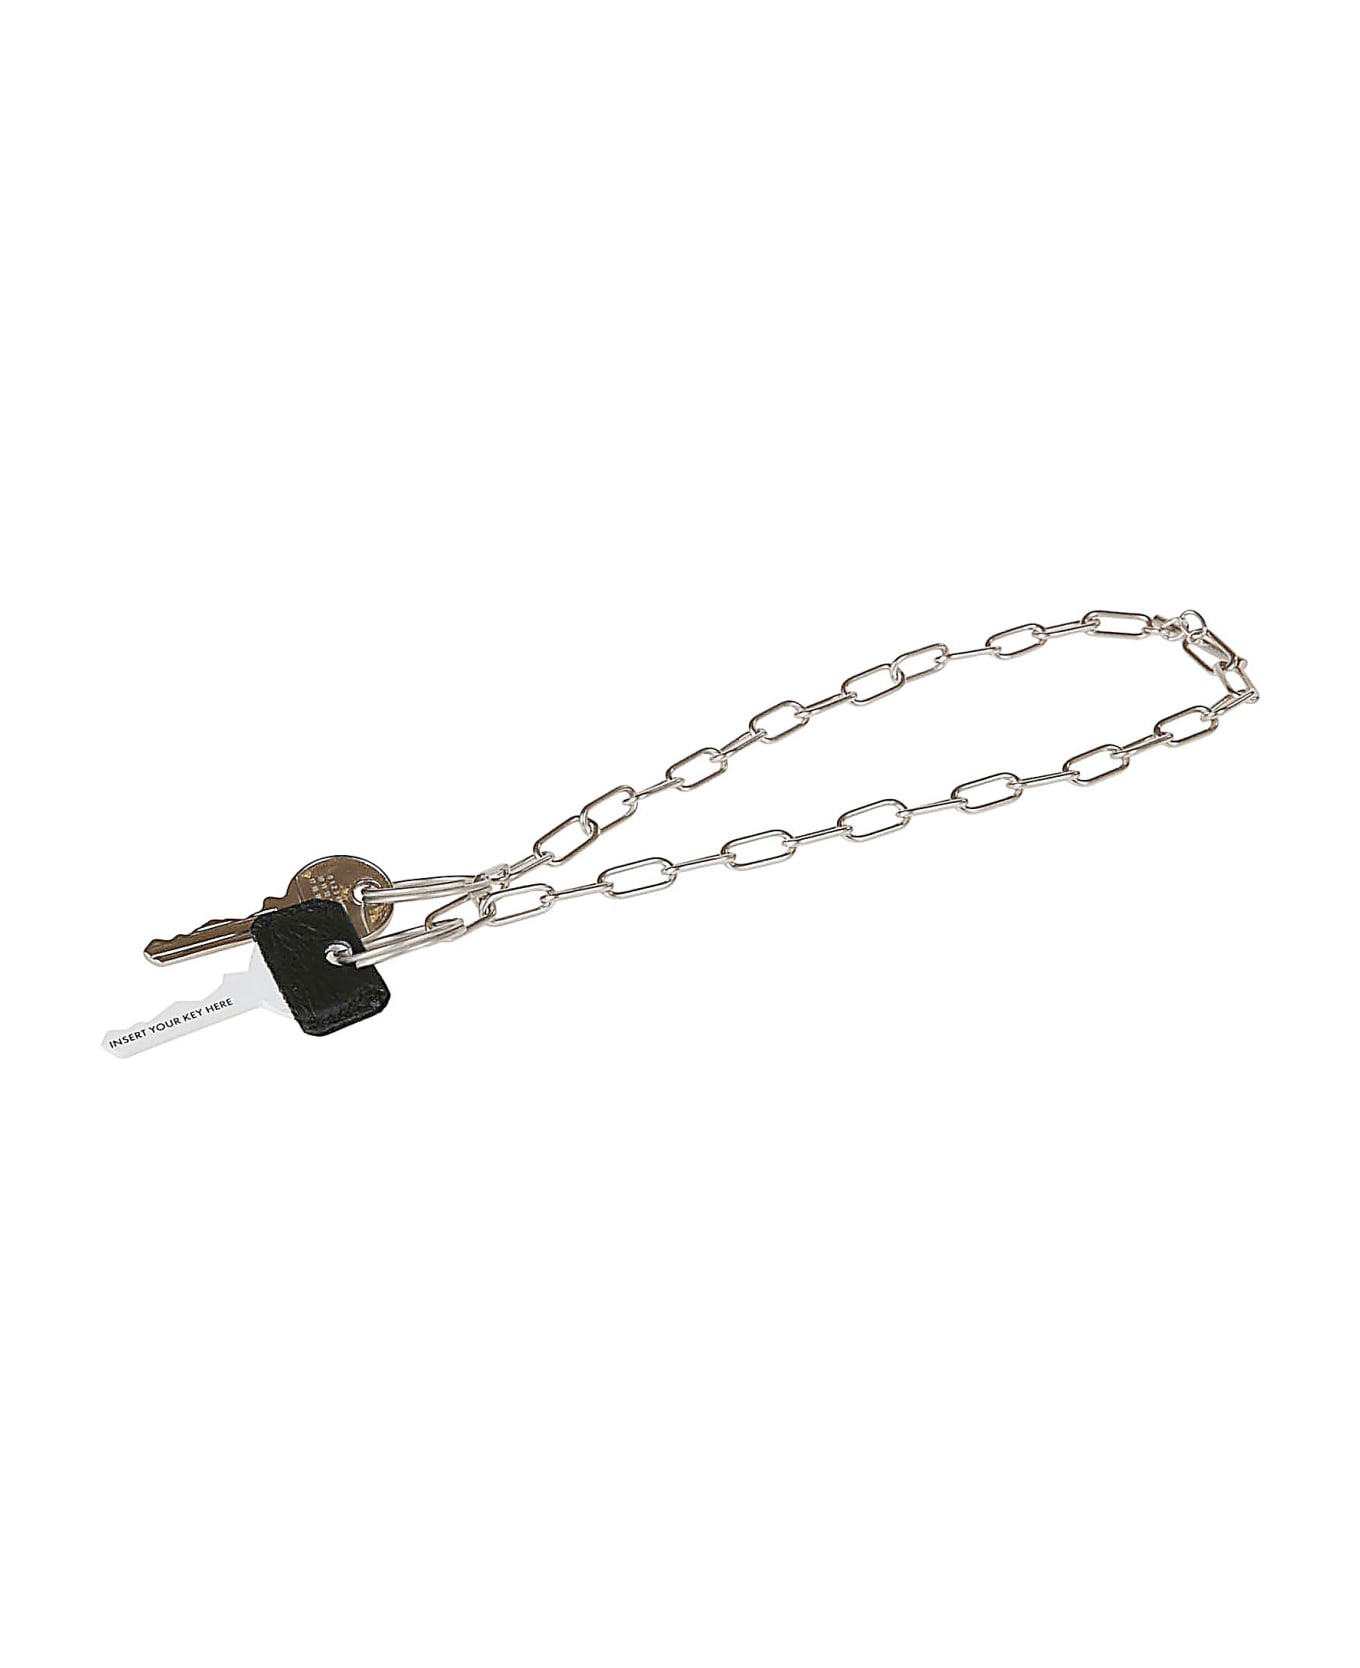 MM6 Maison Margiela Chain Key Holder - Grey/Silver